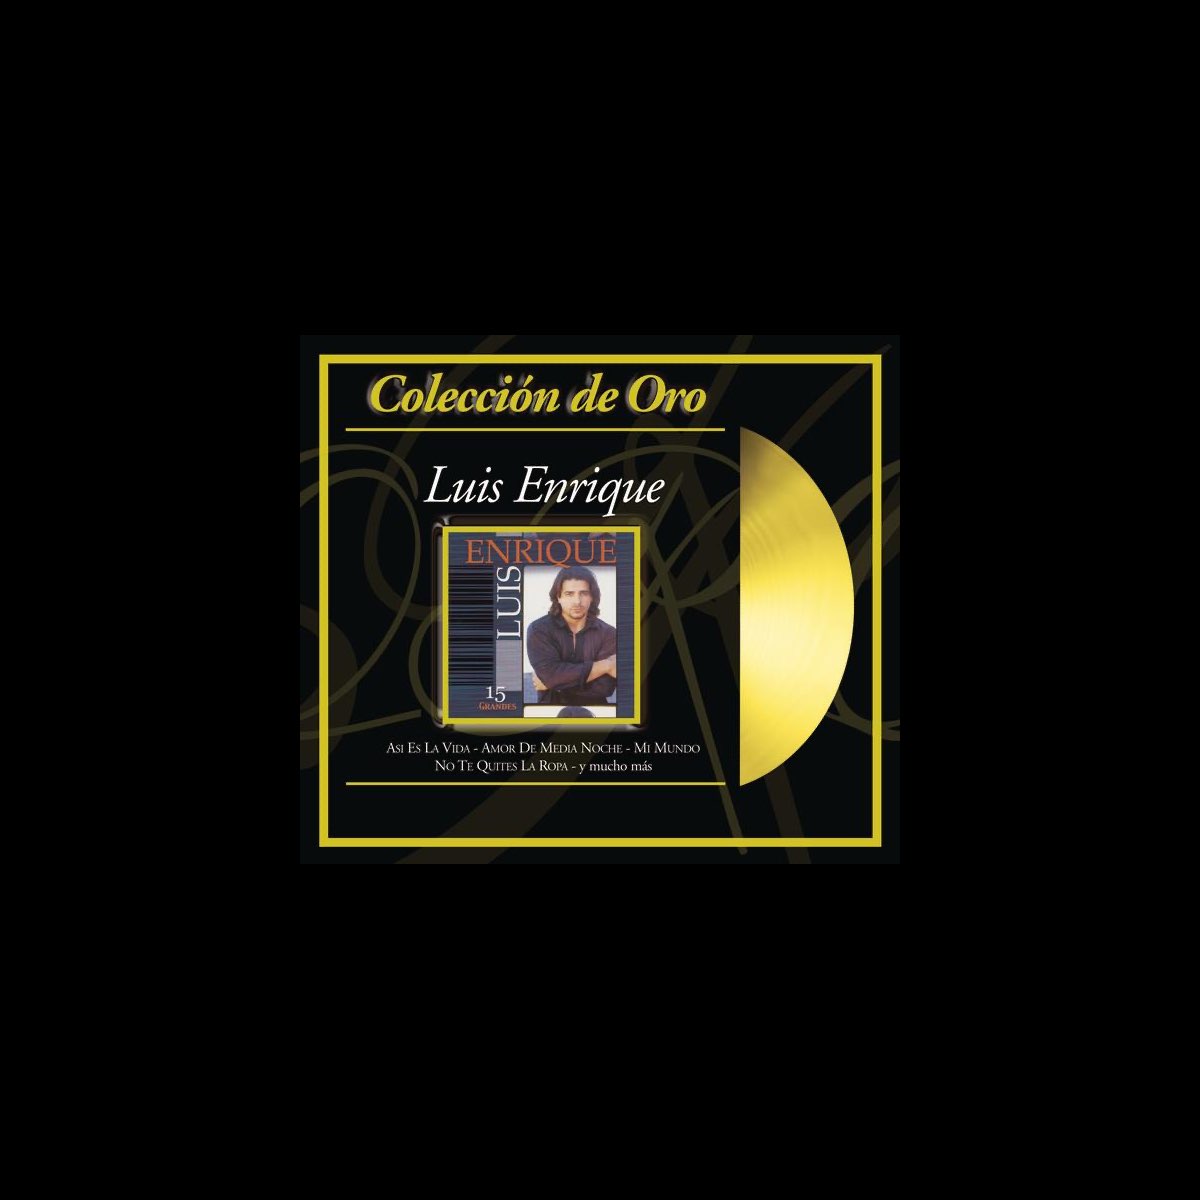 Colección de Oro by Luis Enrique on Apple Music